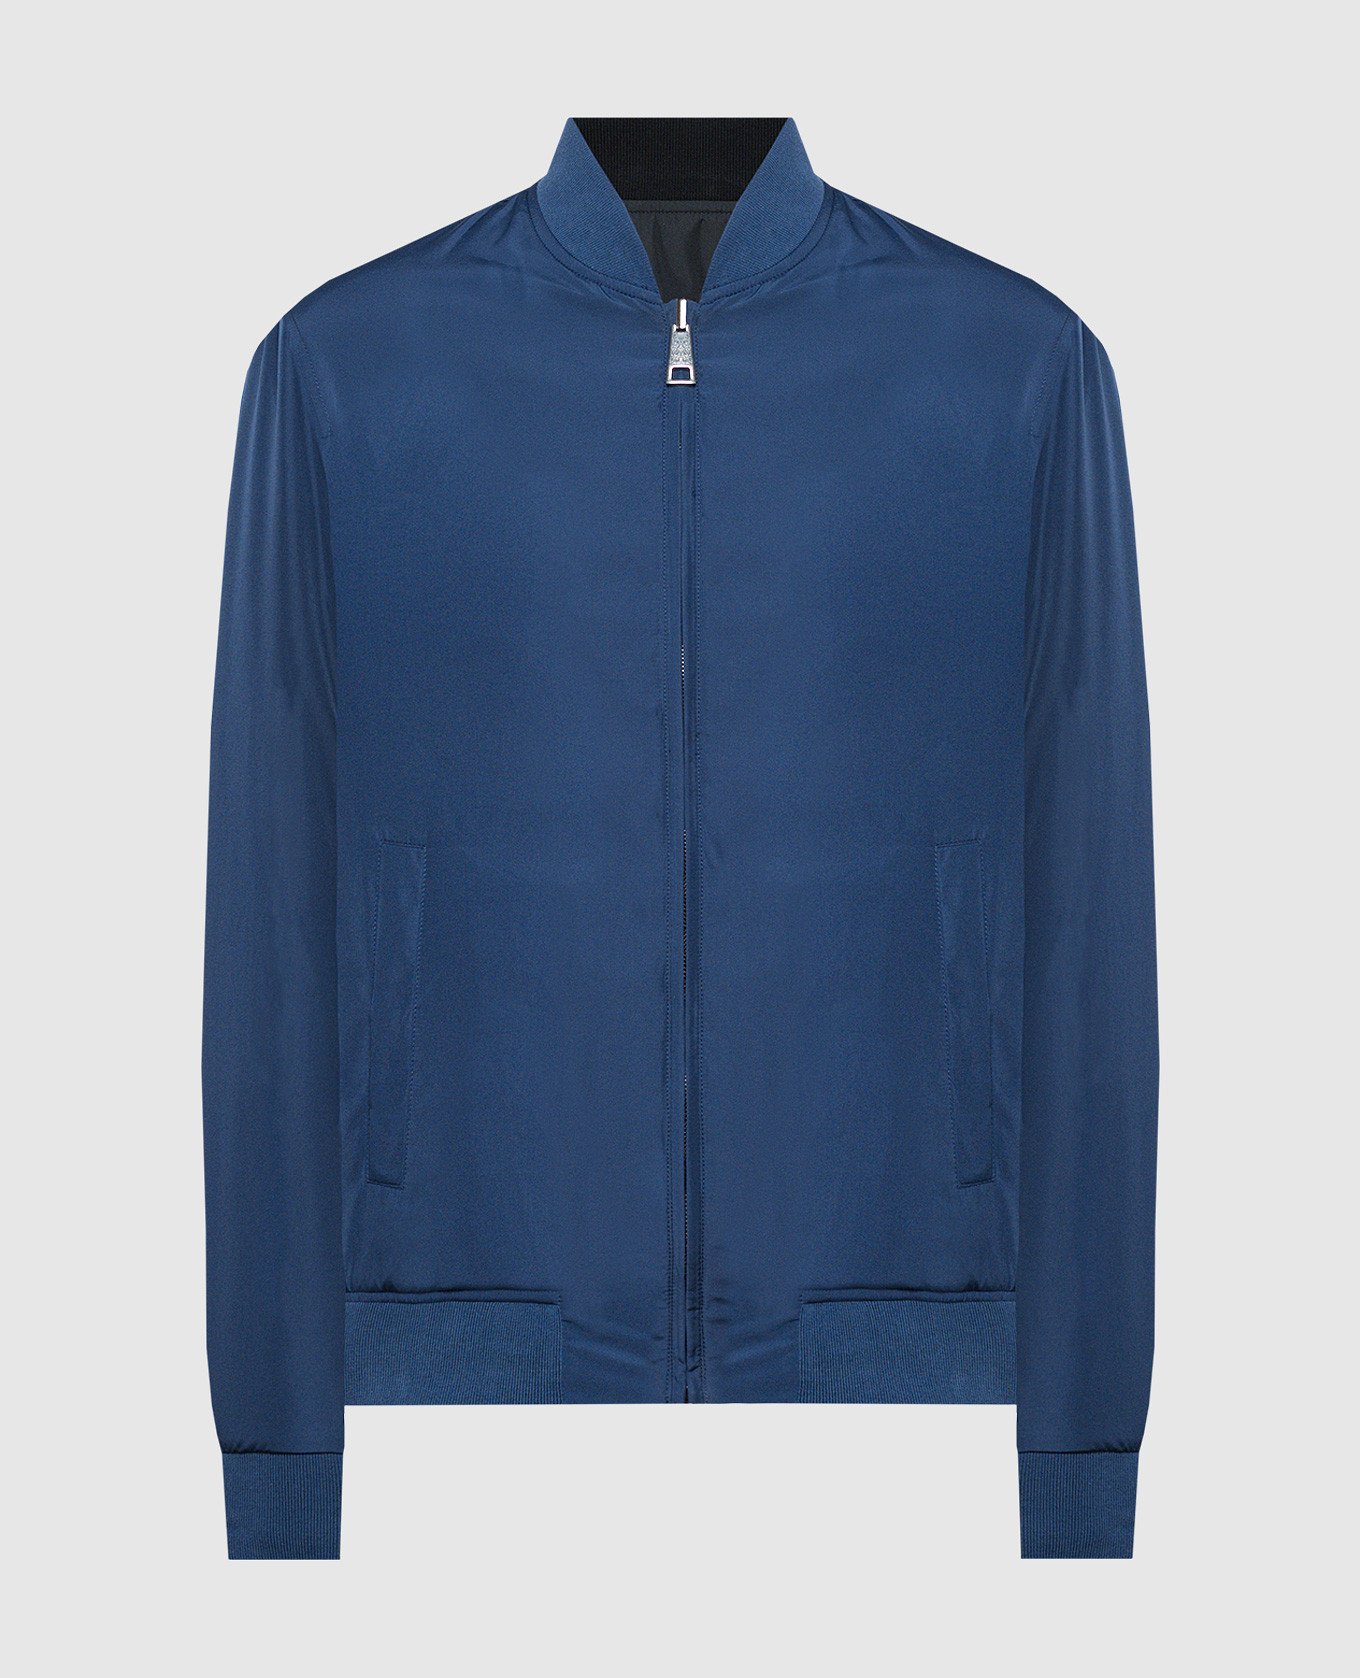 Blue double-sided bomber jacket